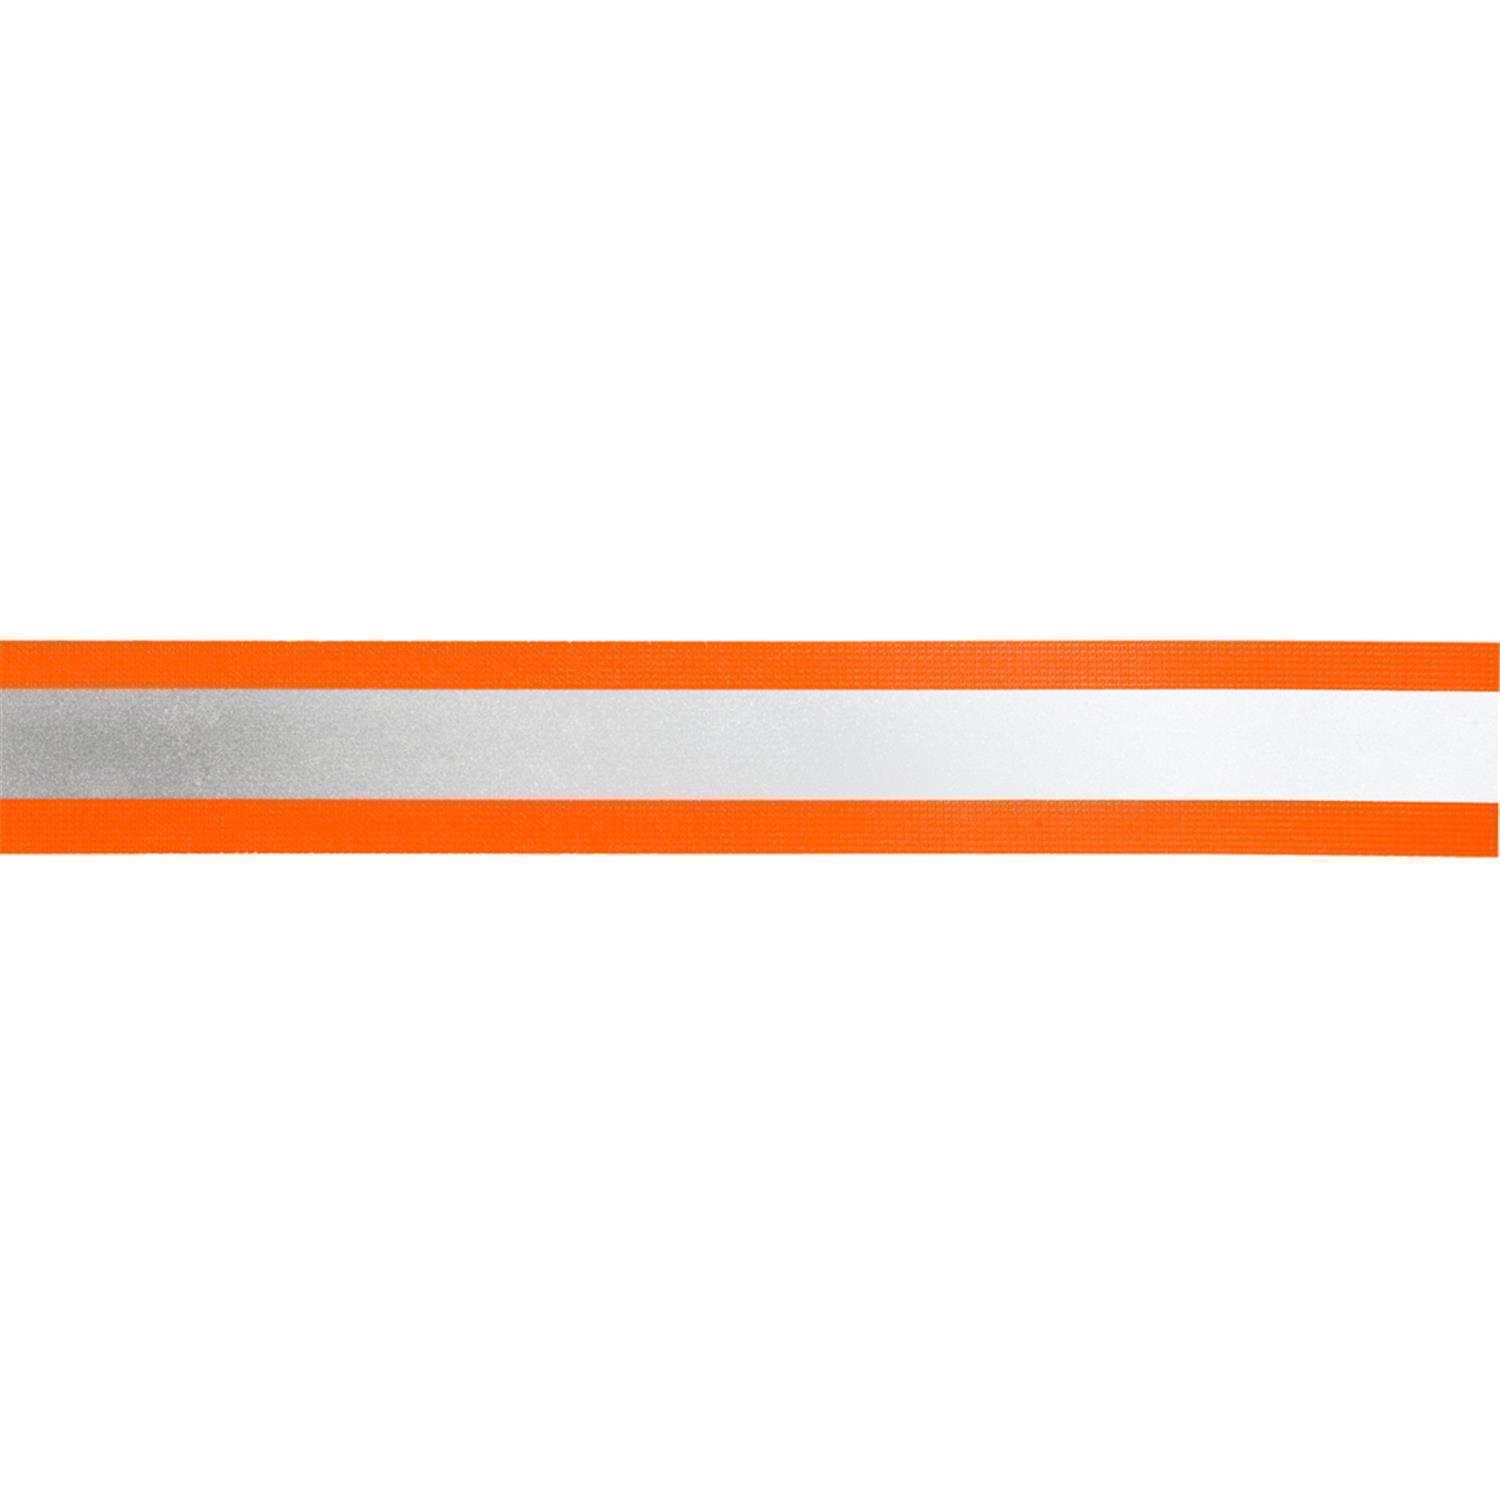 Reflektorband 30mm breit in 3 Farben orange-silber 05 Meter